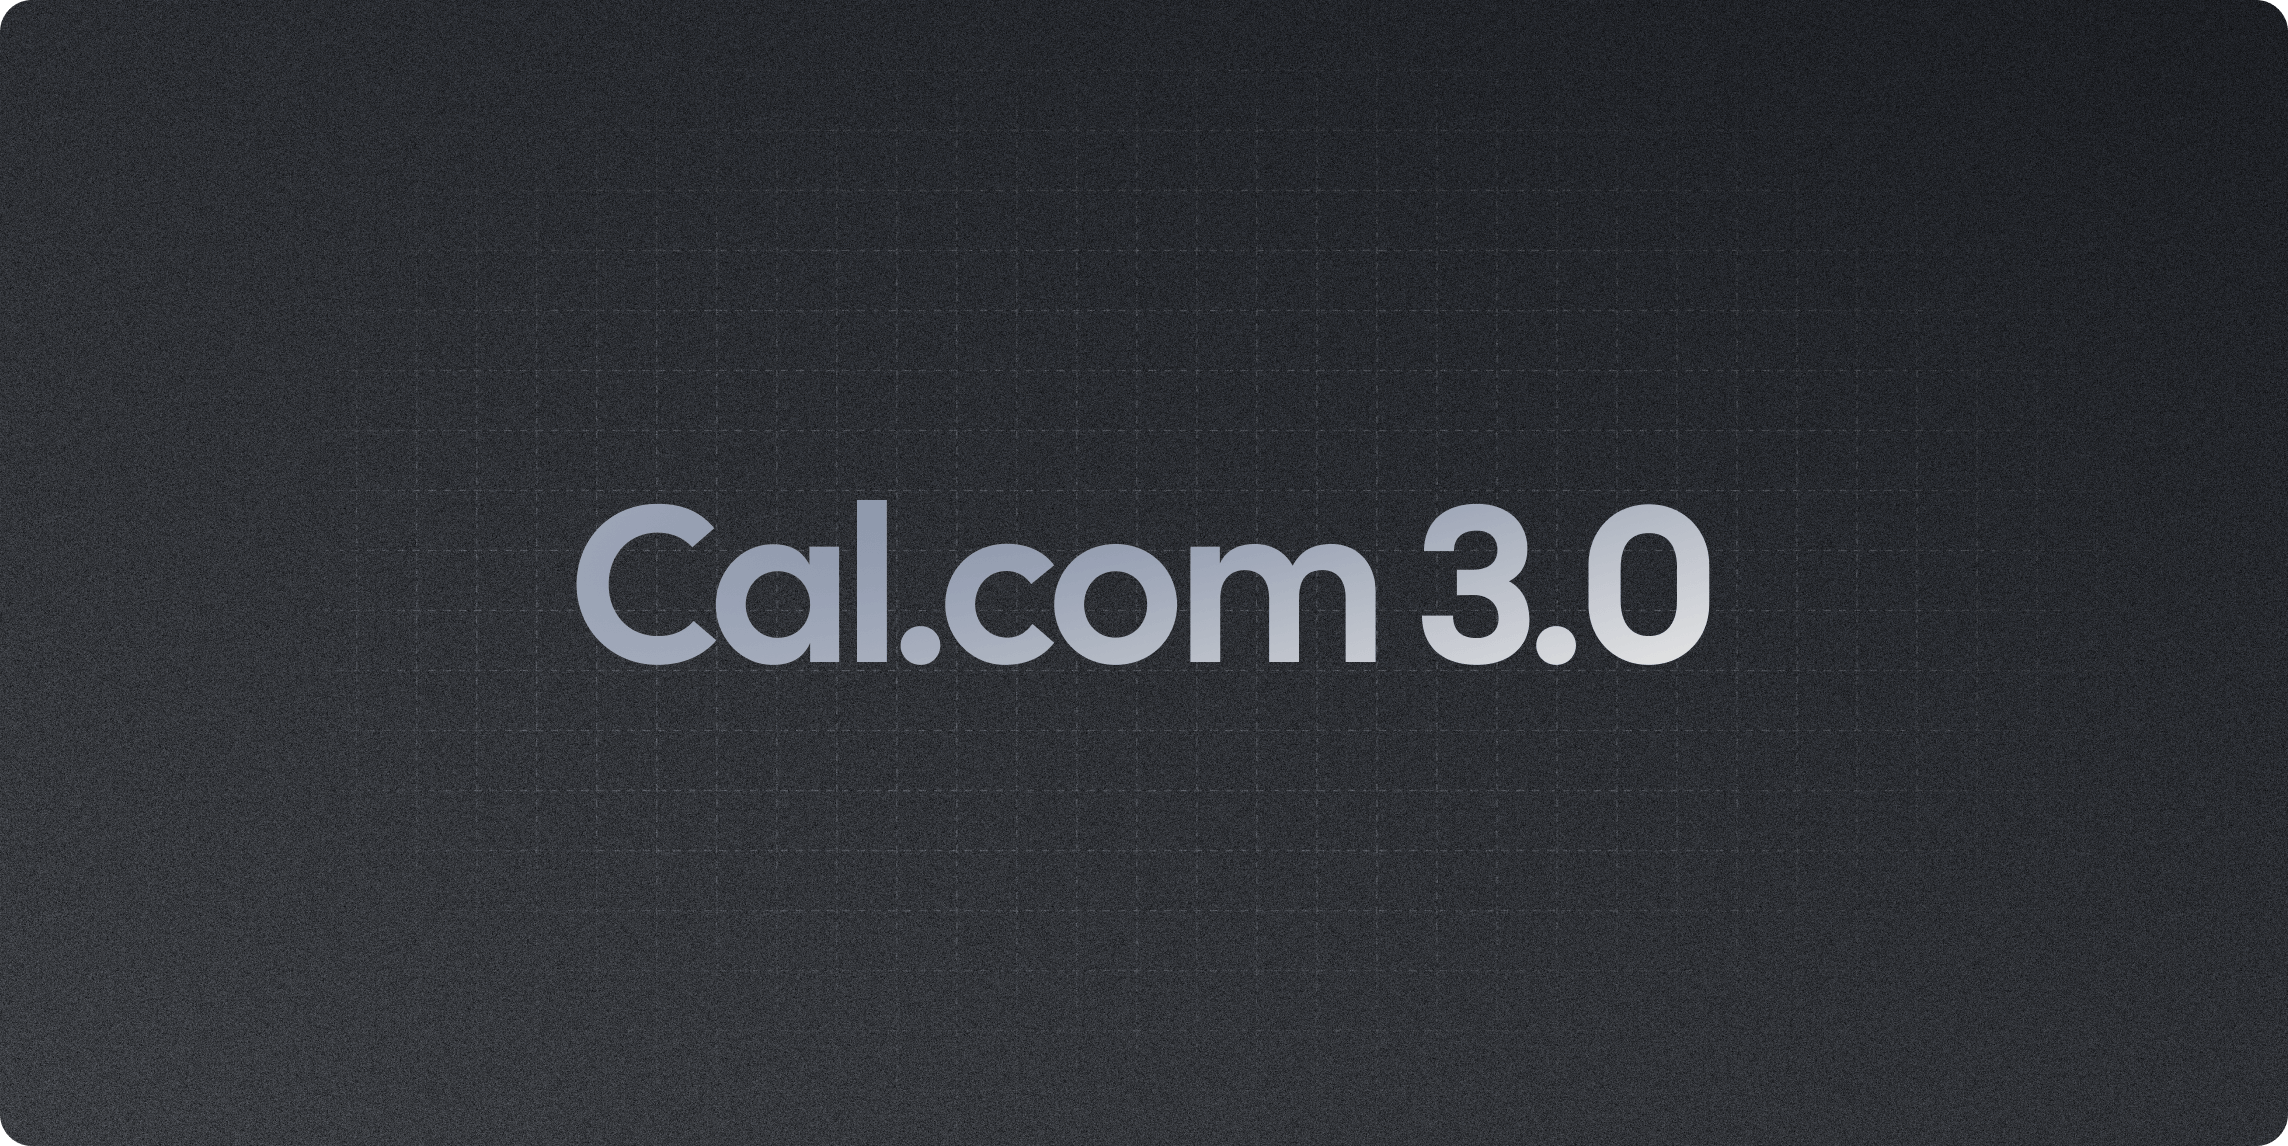 Cal.com v3.0